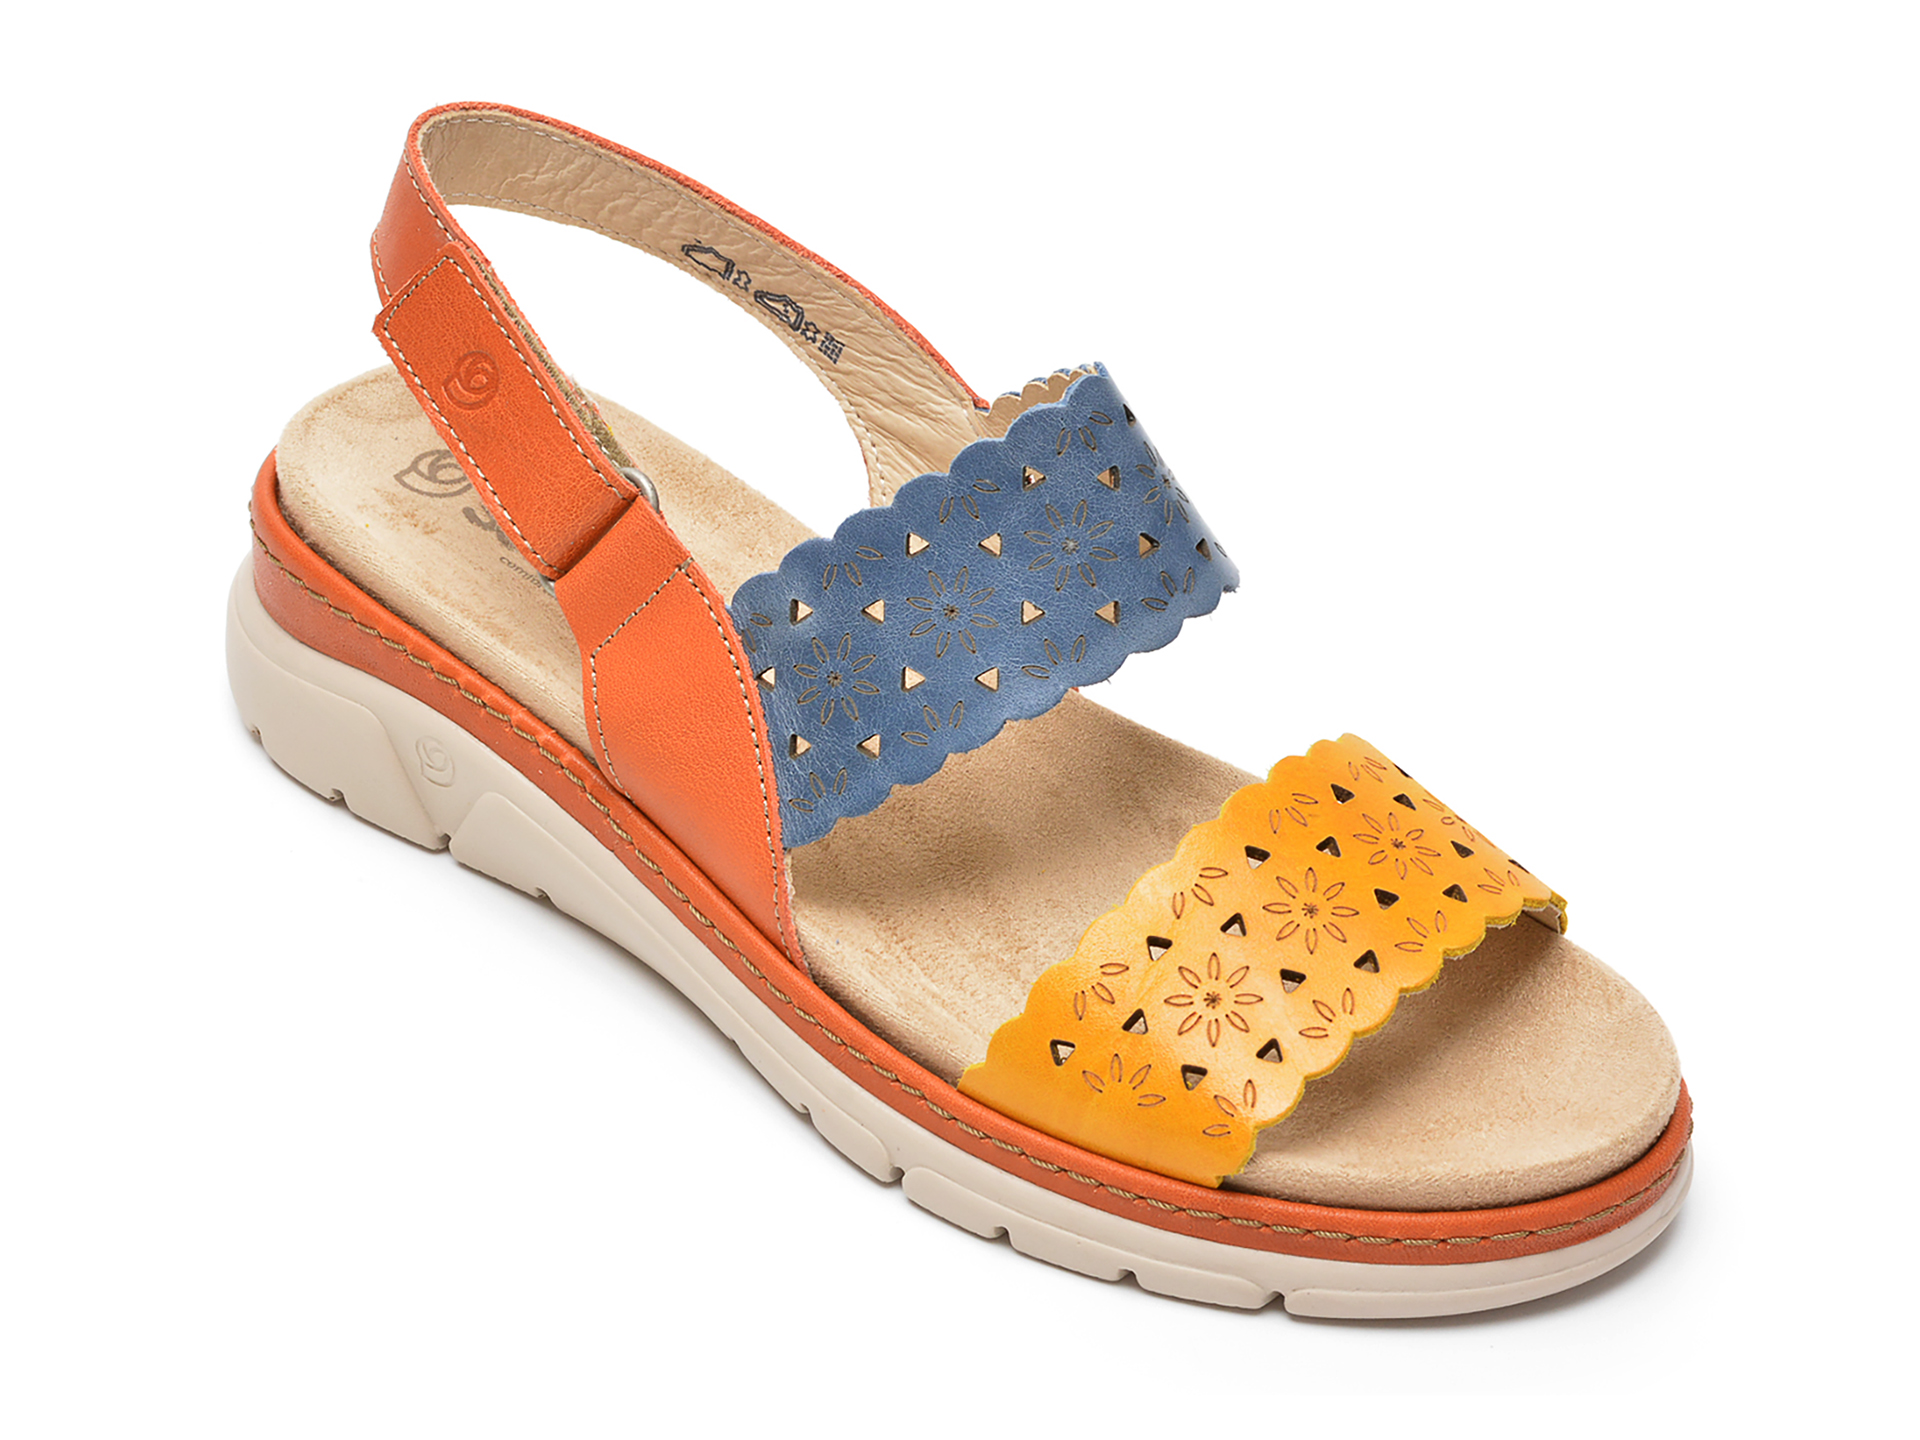 Sandale SUAVE portocalii 12514AG, din piele naturala otter.ro